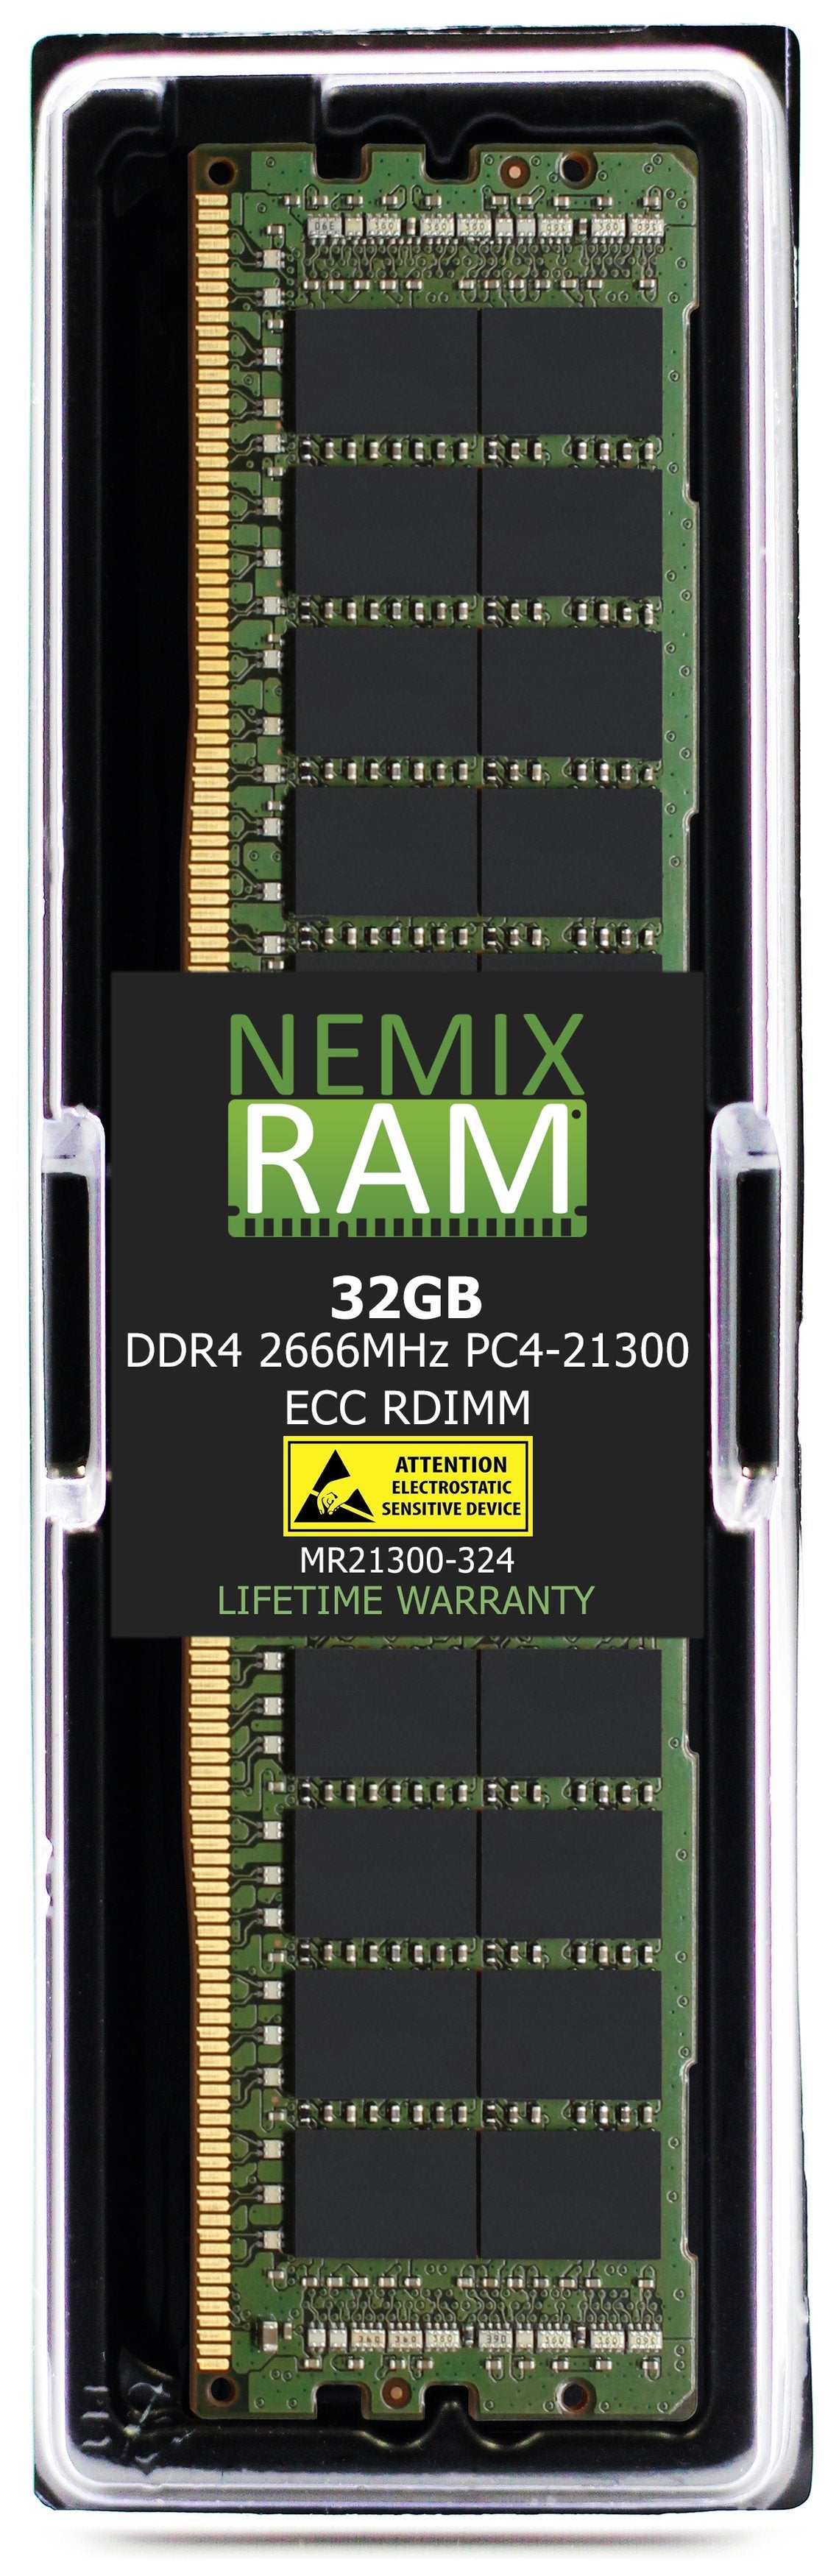 32GB DDR4 2666MHZ PC4-21300 RDIMM Compatible with Supermicro MEM-DR432L-CL01-ER29